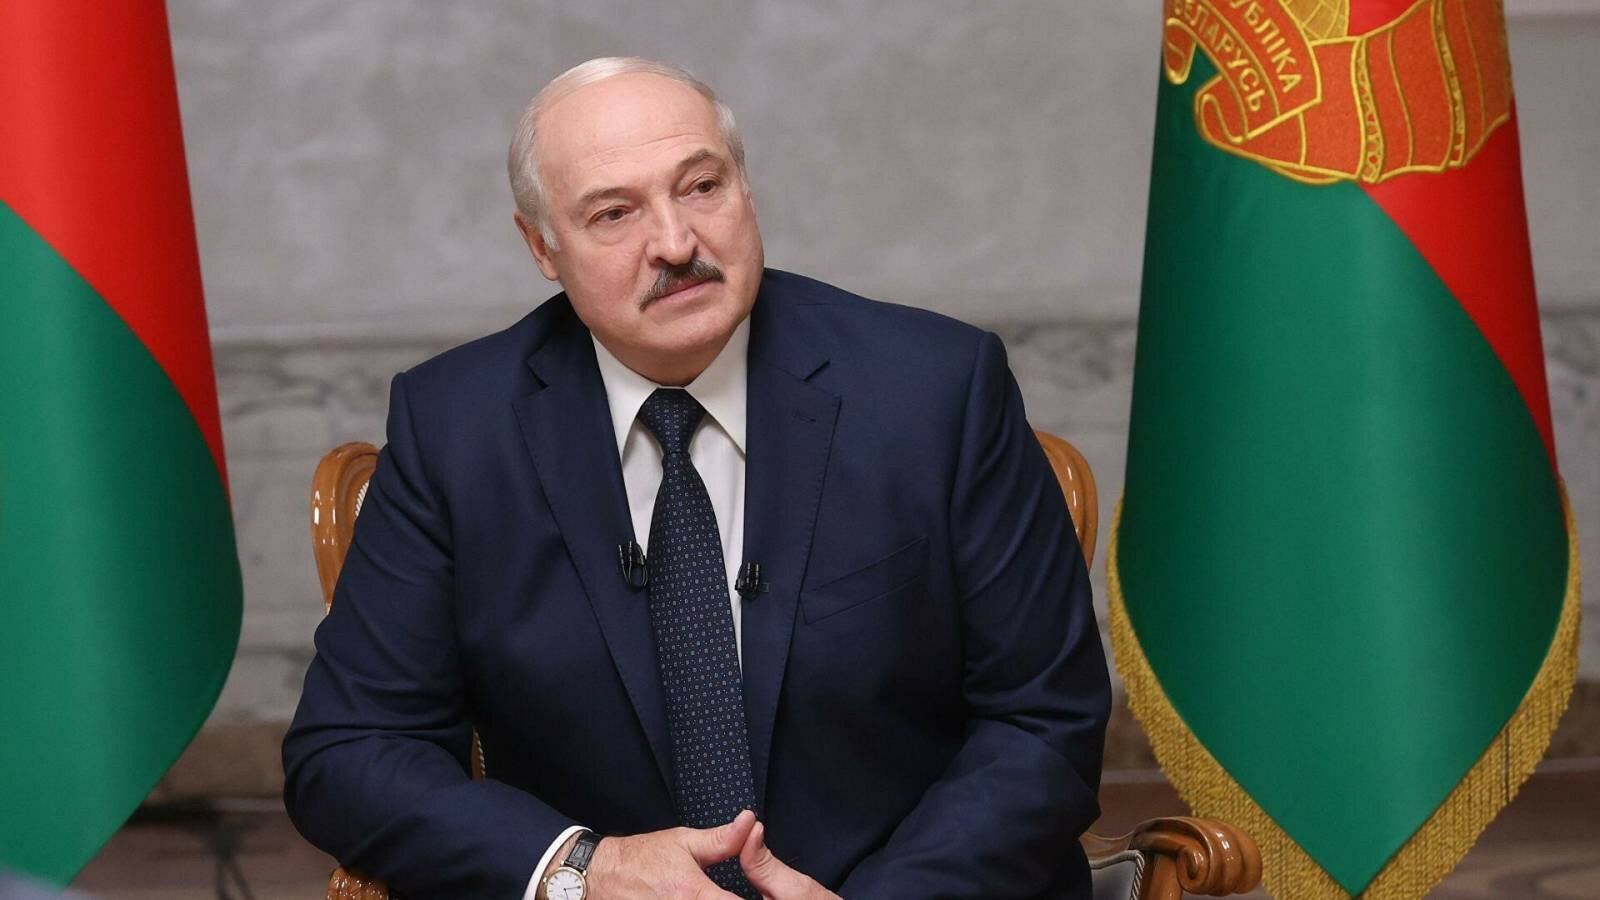 "Меня Путин постоянно упрекает", - Лукашенко пригрозил Украине неприятностями 